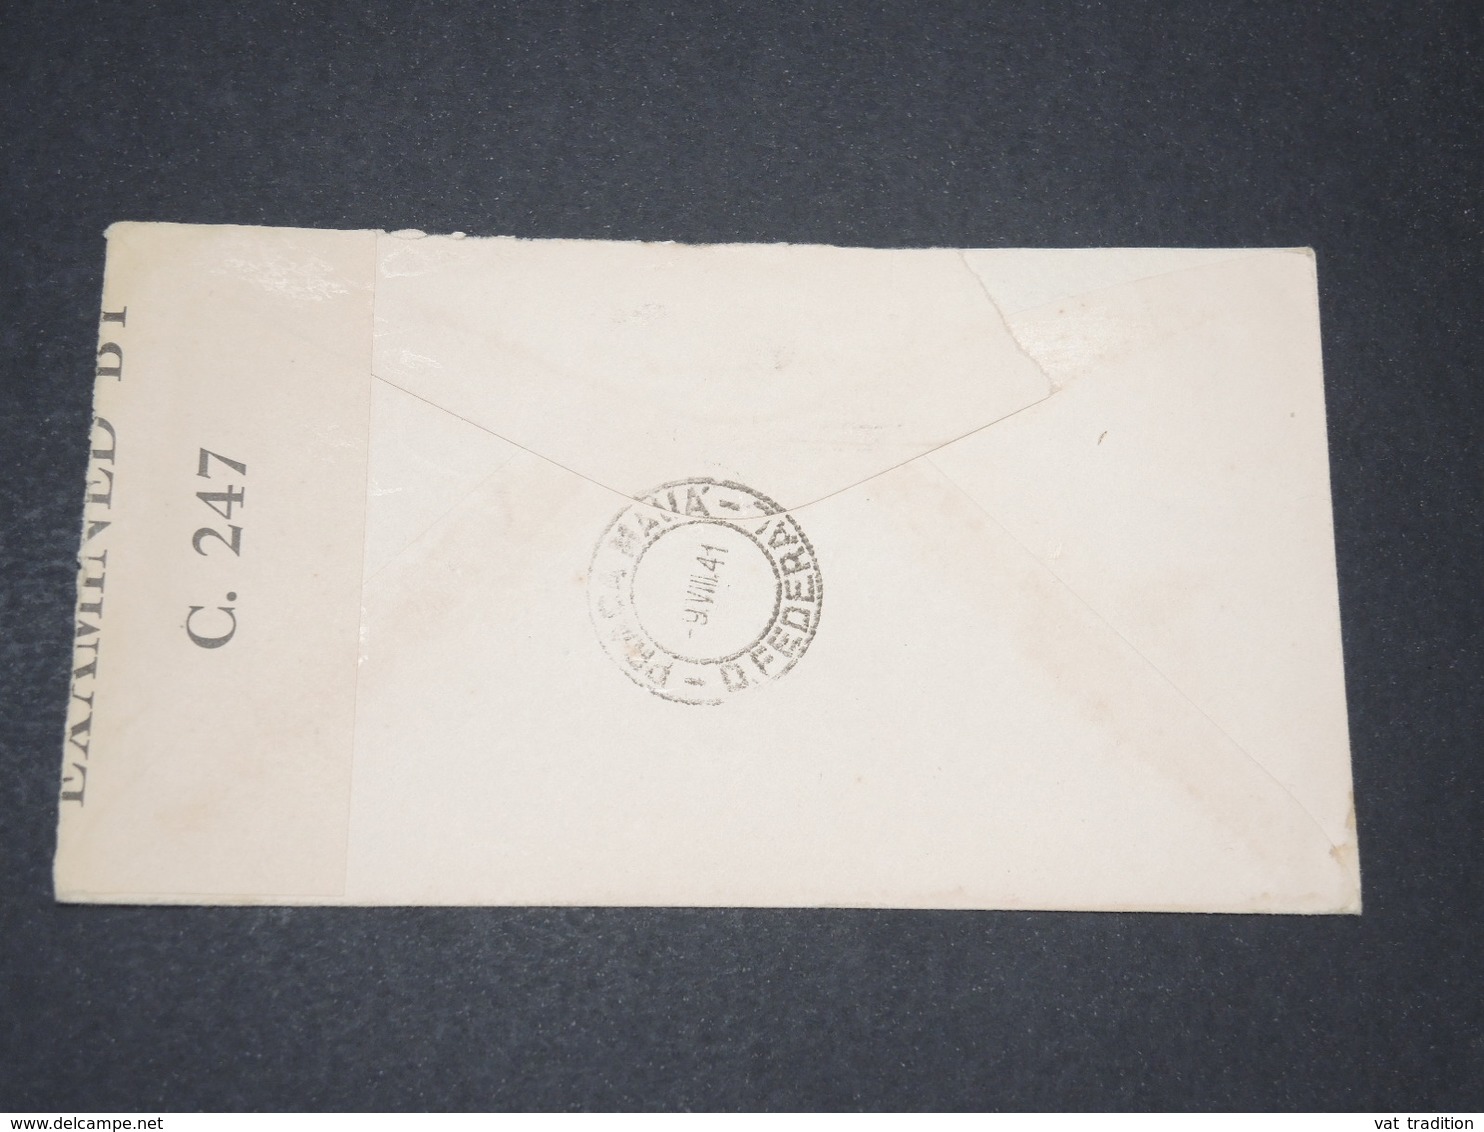 CANADA - Enveloppe De Ottawa Pour Rio De Janeiro En 1941 Avec Contrôle Postal - L 14324 - Cartas & Documentos